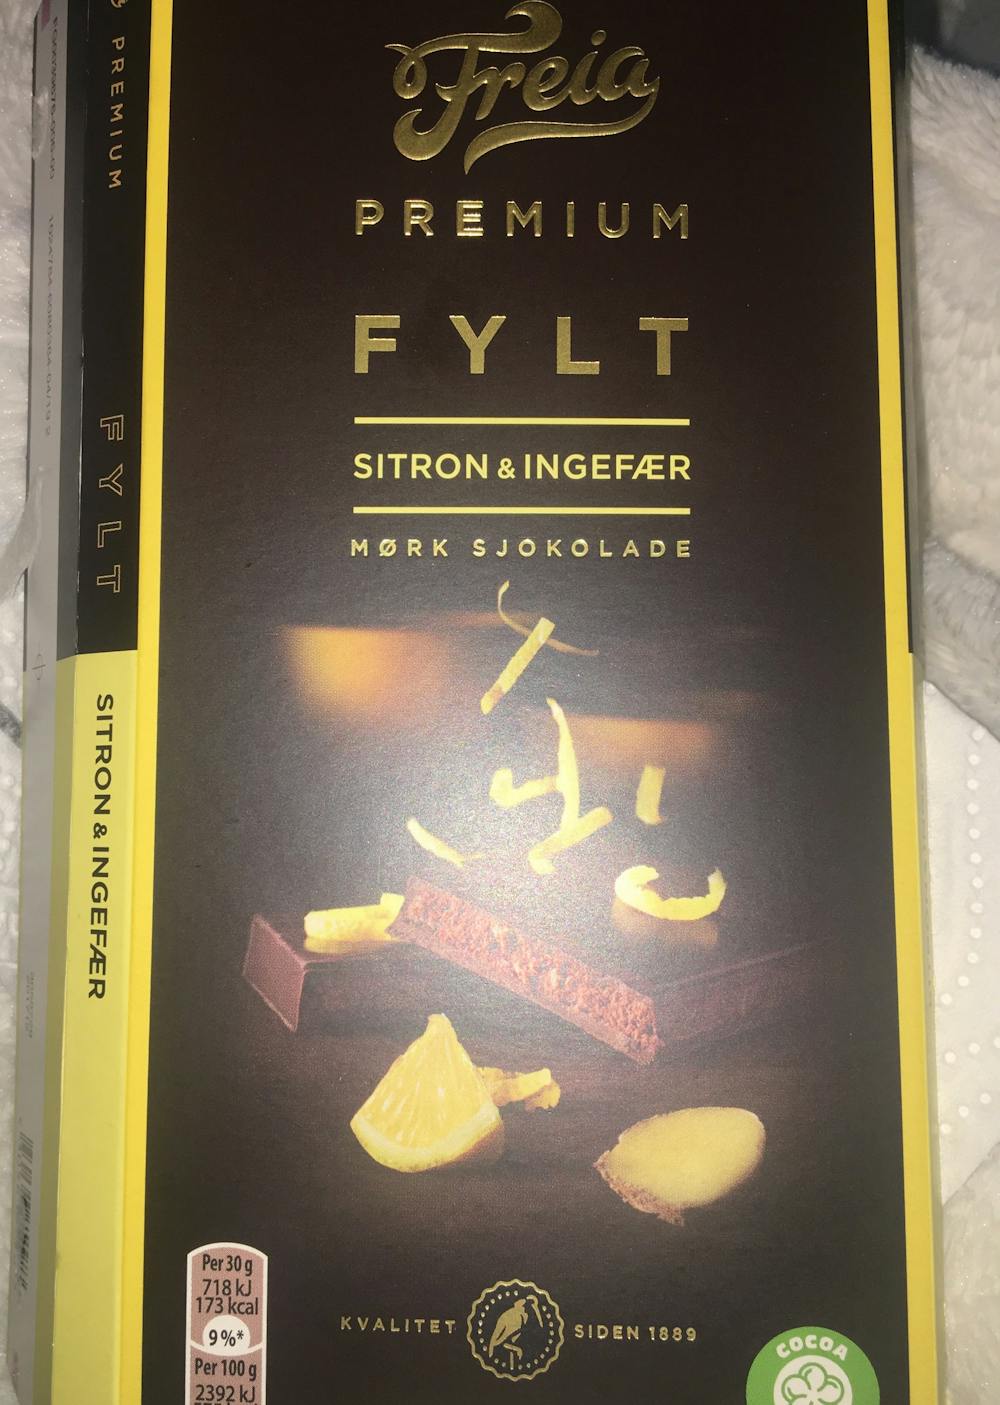 Premium fylt sitron & ingefær, Freia